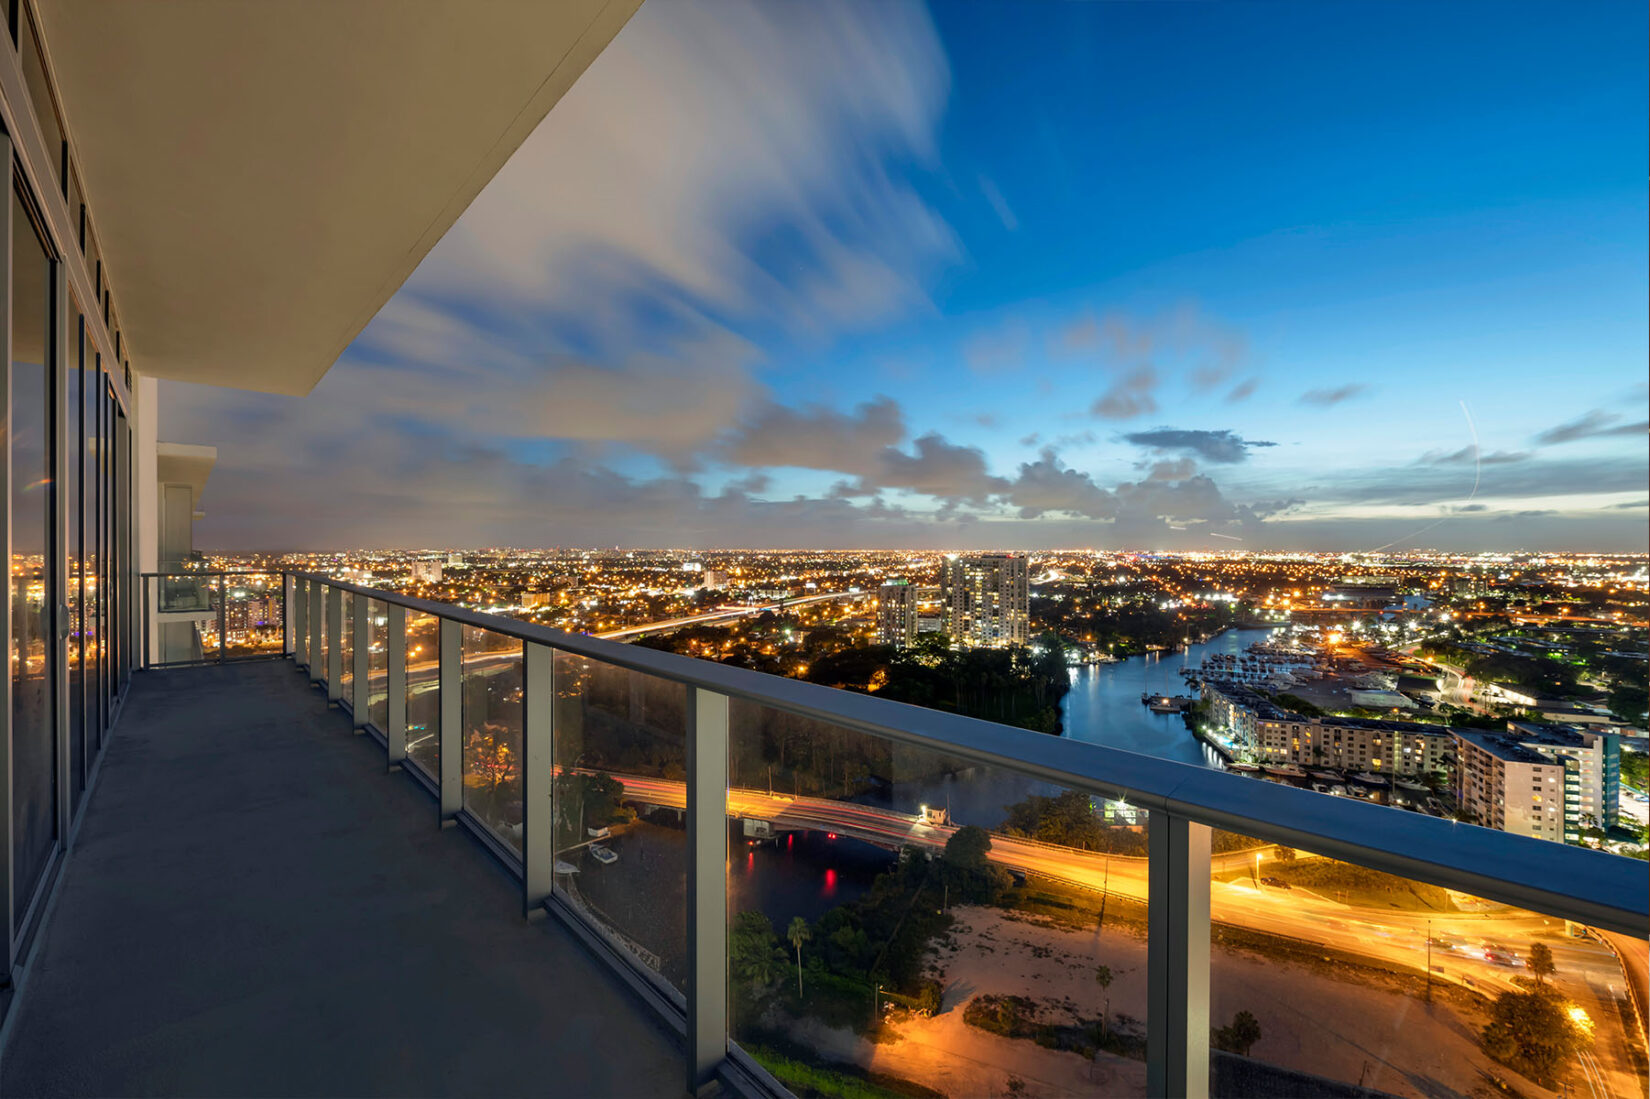 Balcony View of Miami at Dusk